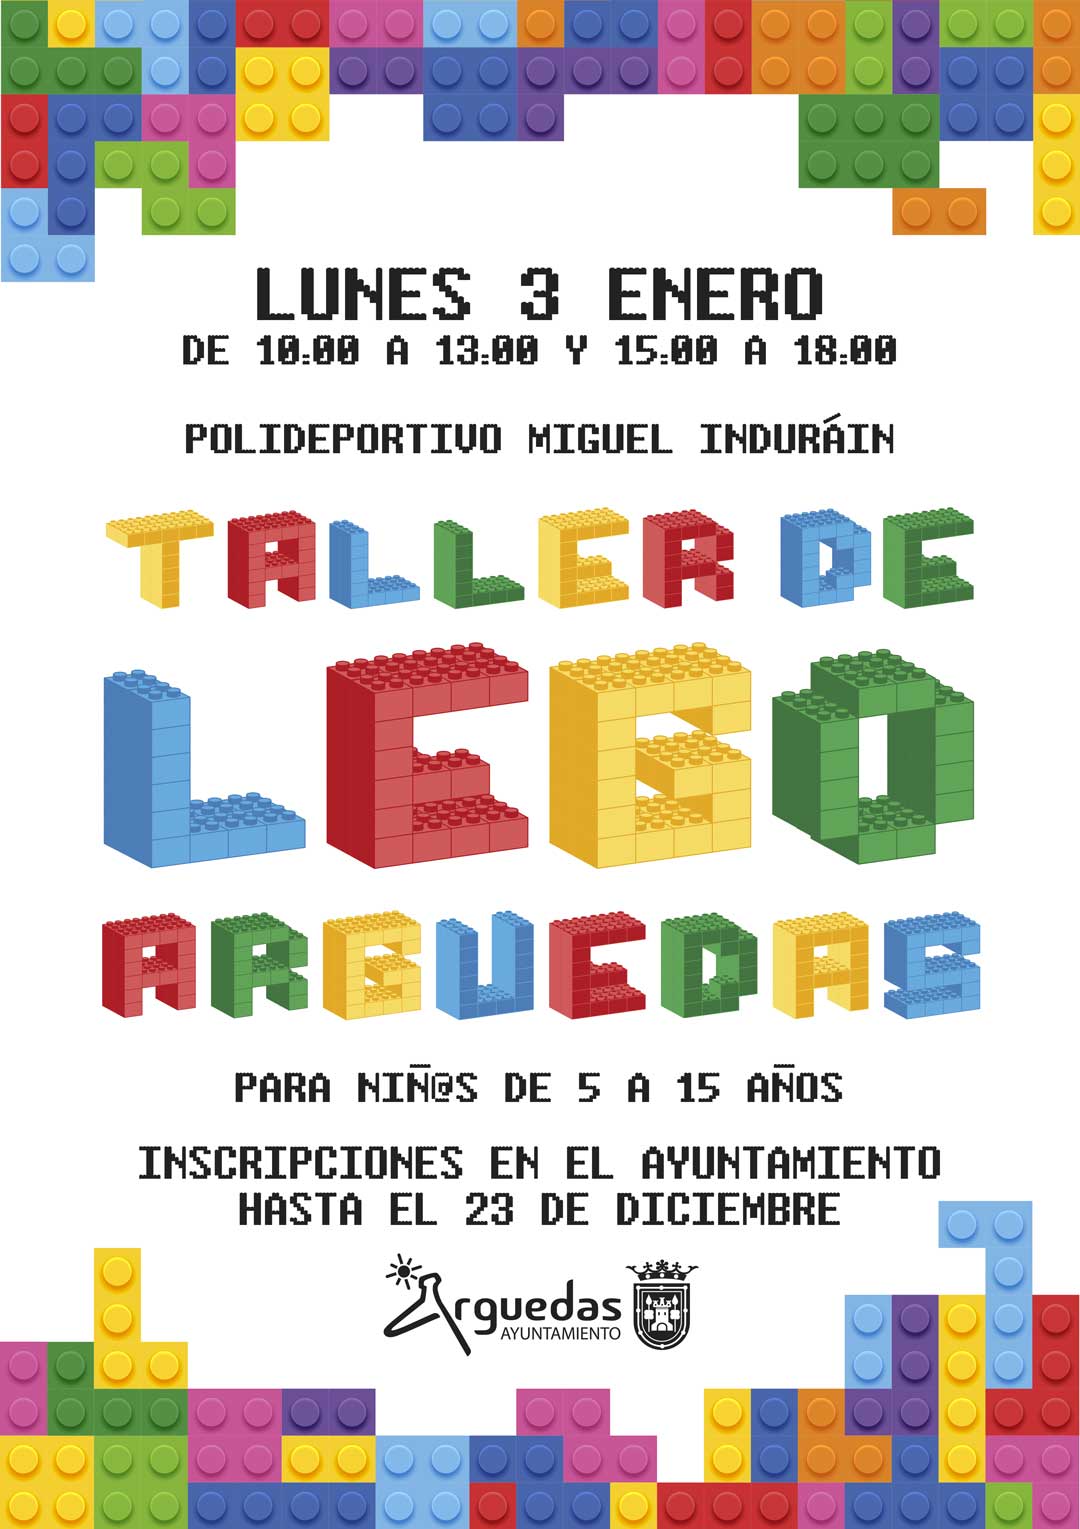 Taller-de-Lego-2021-WEB